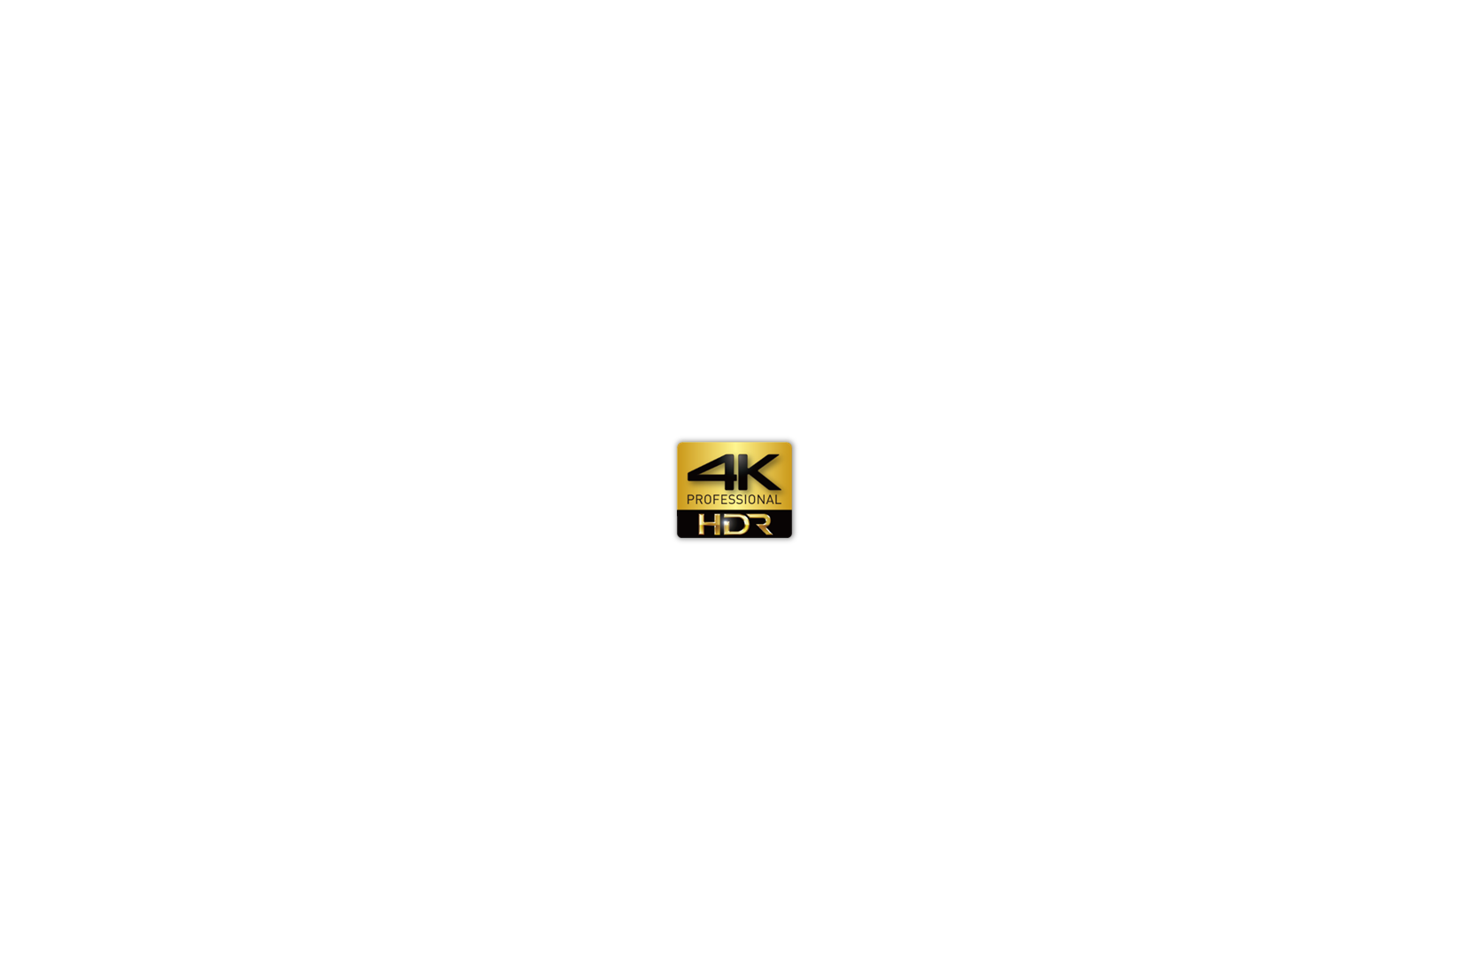 4k_HDR_logo